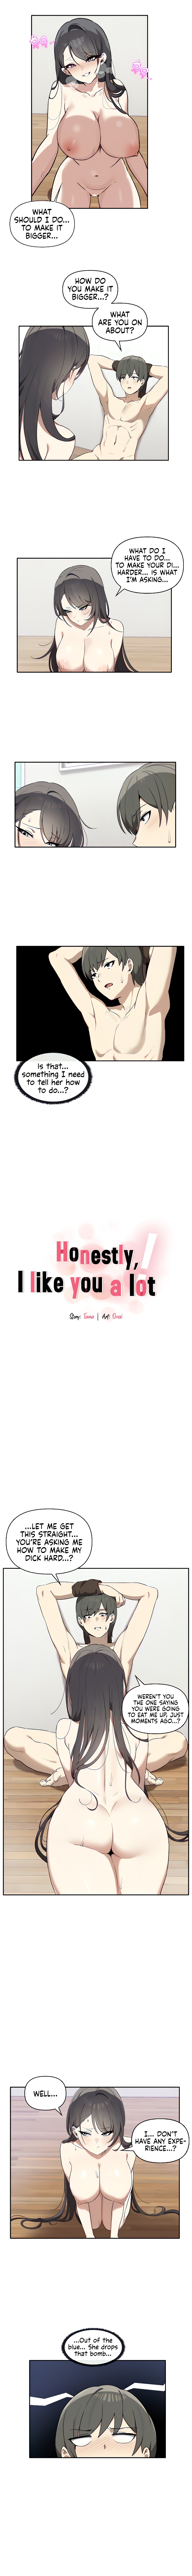 Honestly, I Like You A Lot! - Page 2